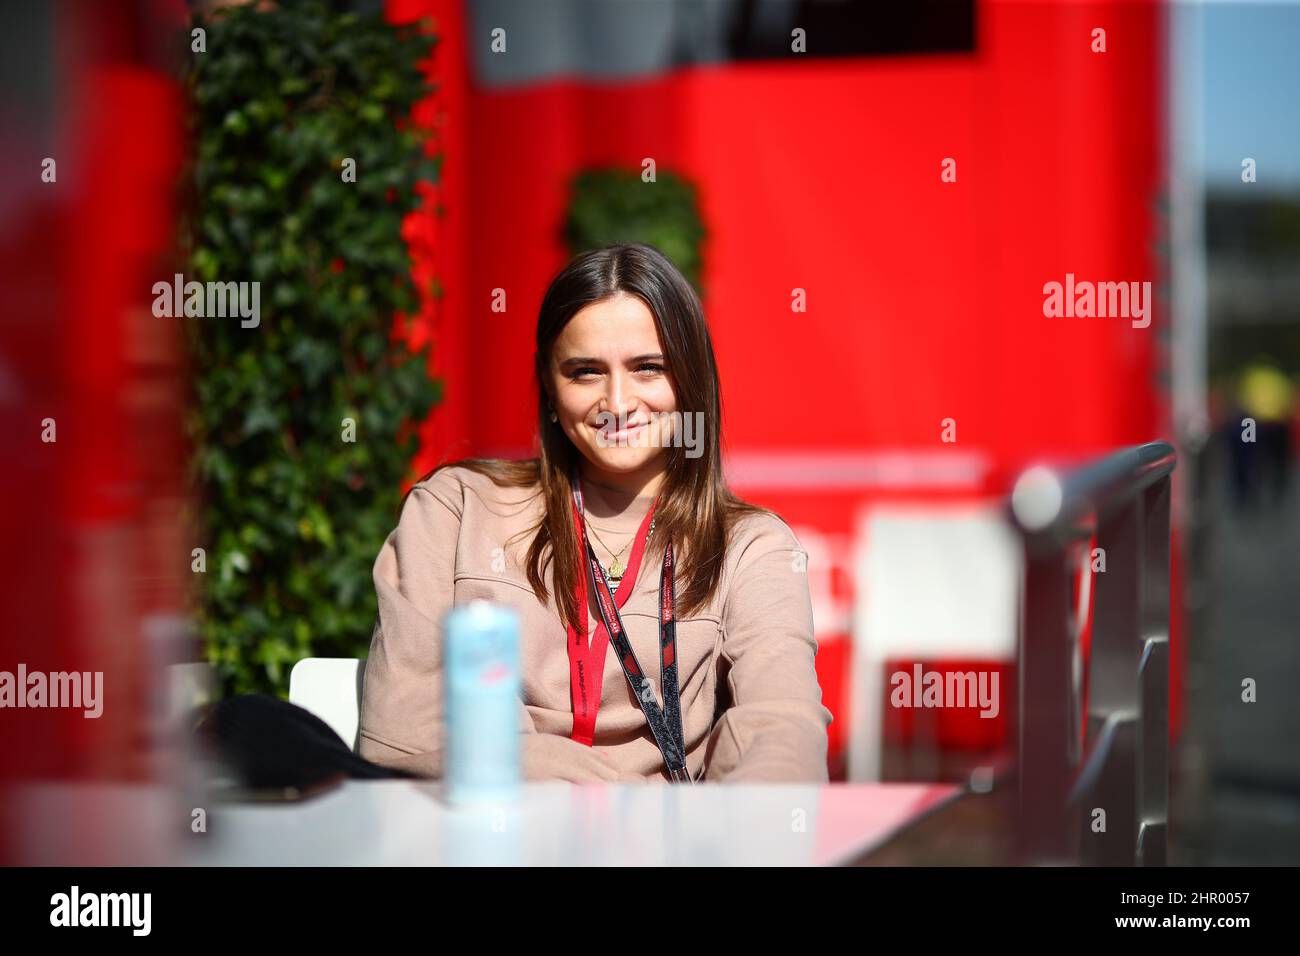 Charlotte Sinè, petite amie de Charles Leclerc, Ferrari pendant les journées d'essais d'hiver, Barcelone 23-25 février 2022, Championnat du monde de Formule 1 2022. Banque D'Images